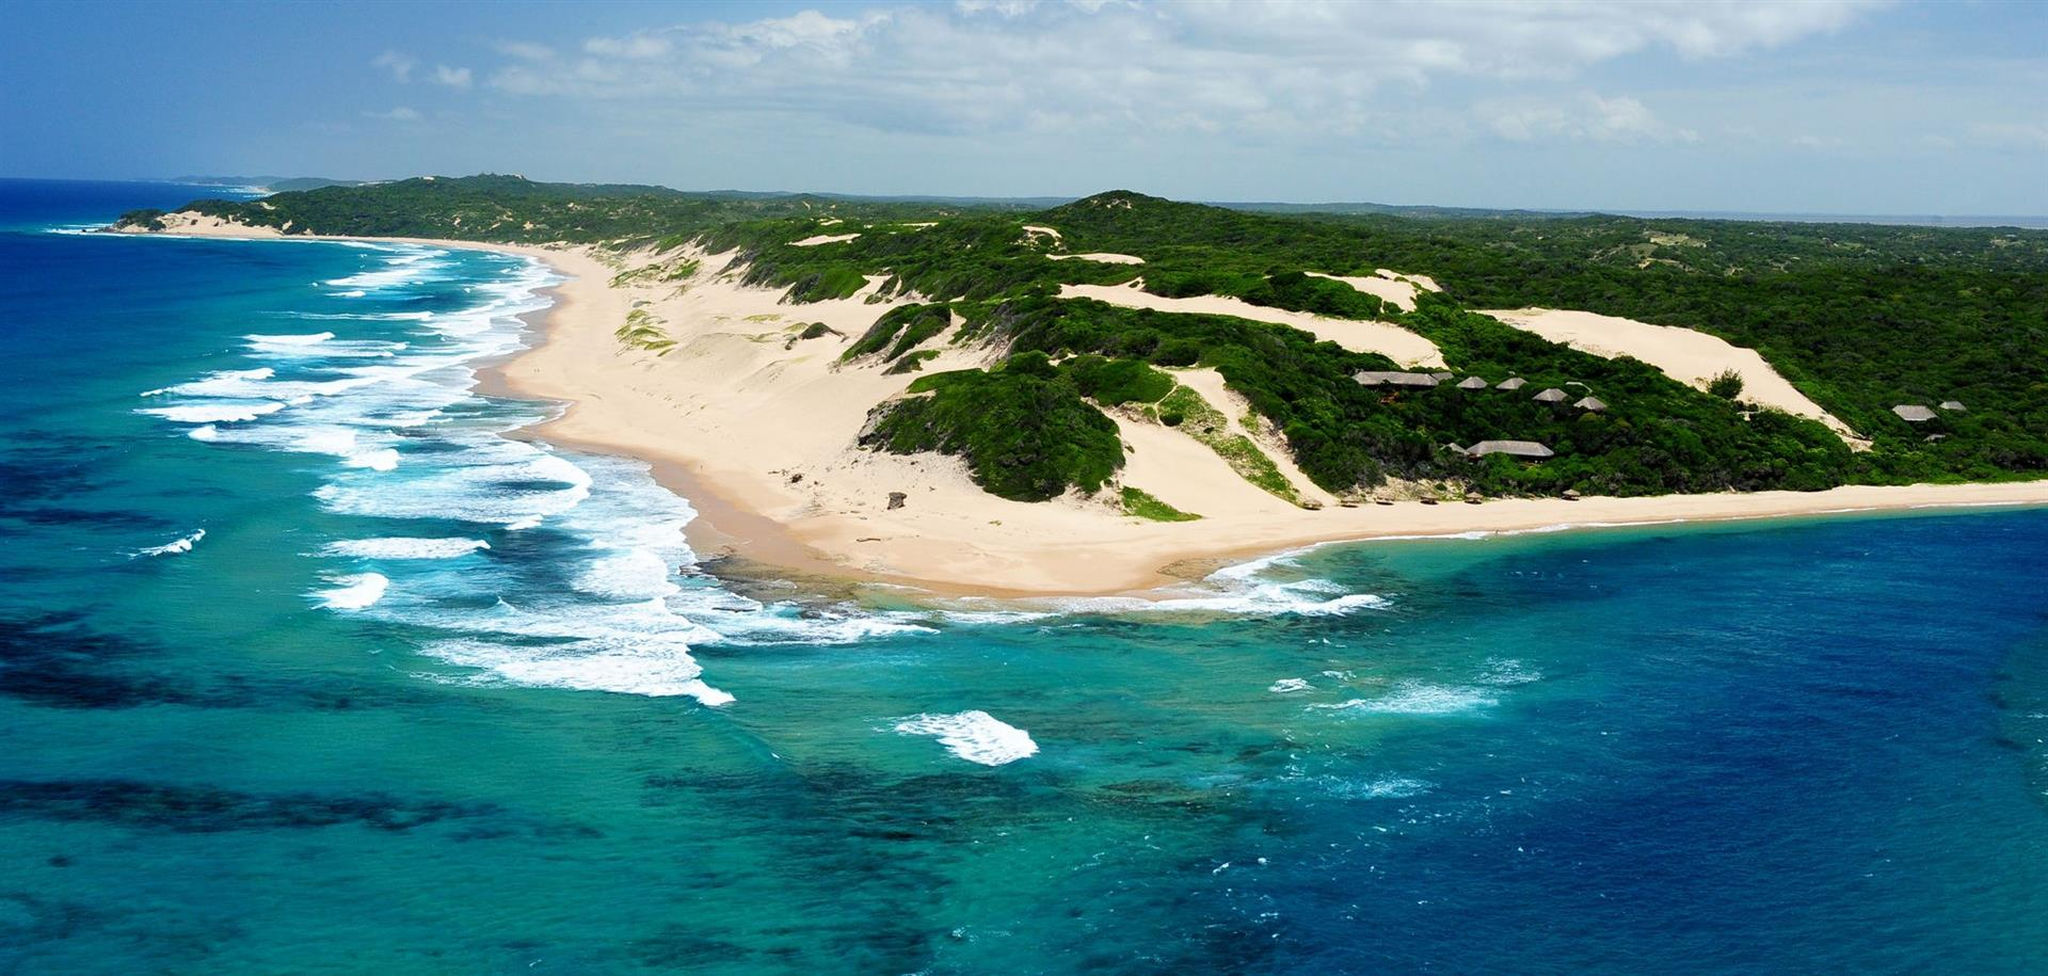 Machangulo beach in Mozambique